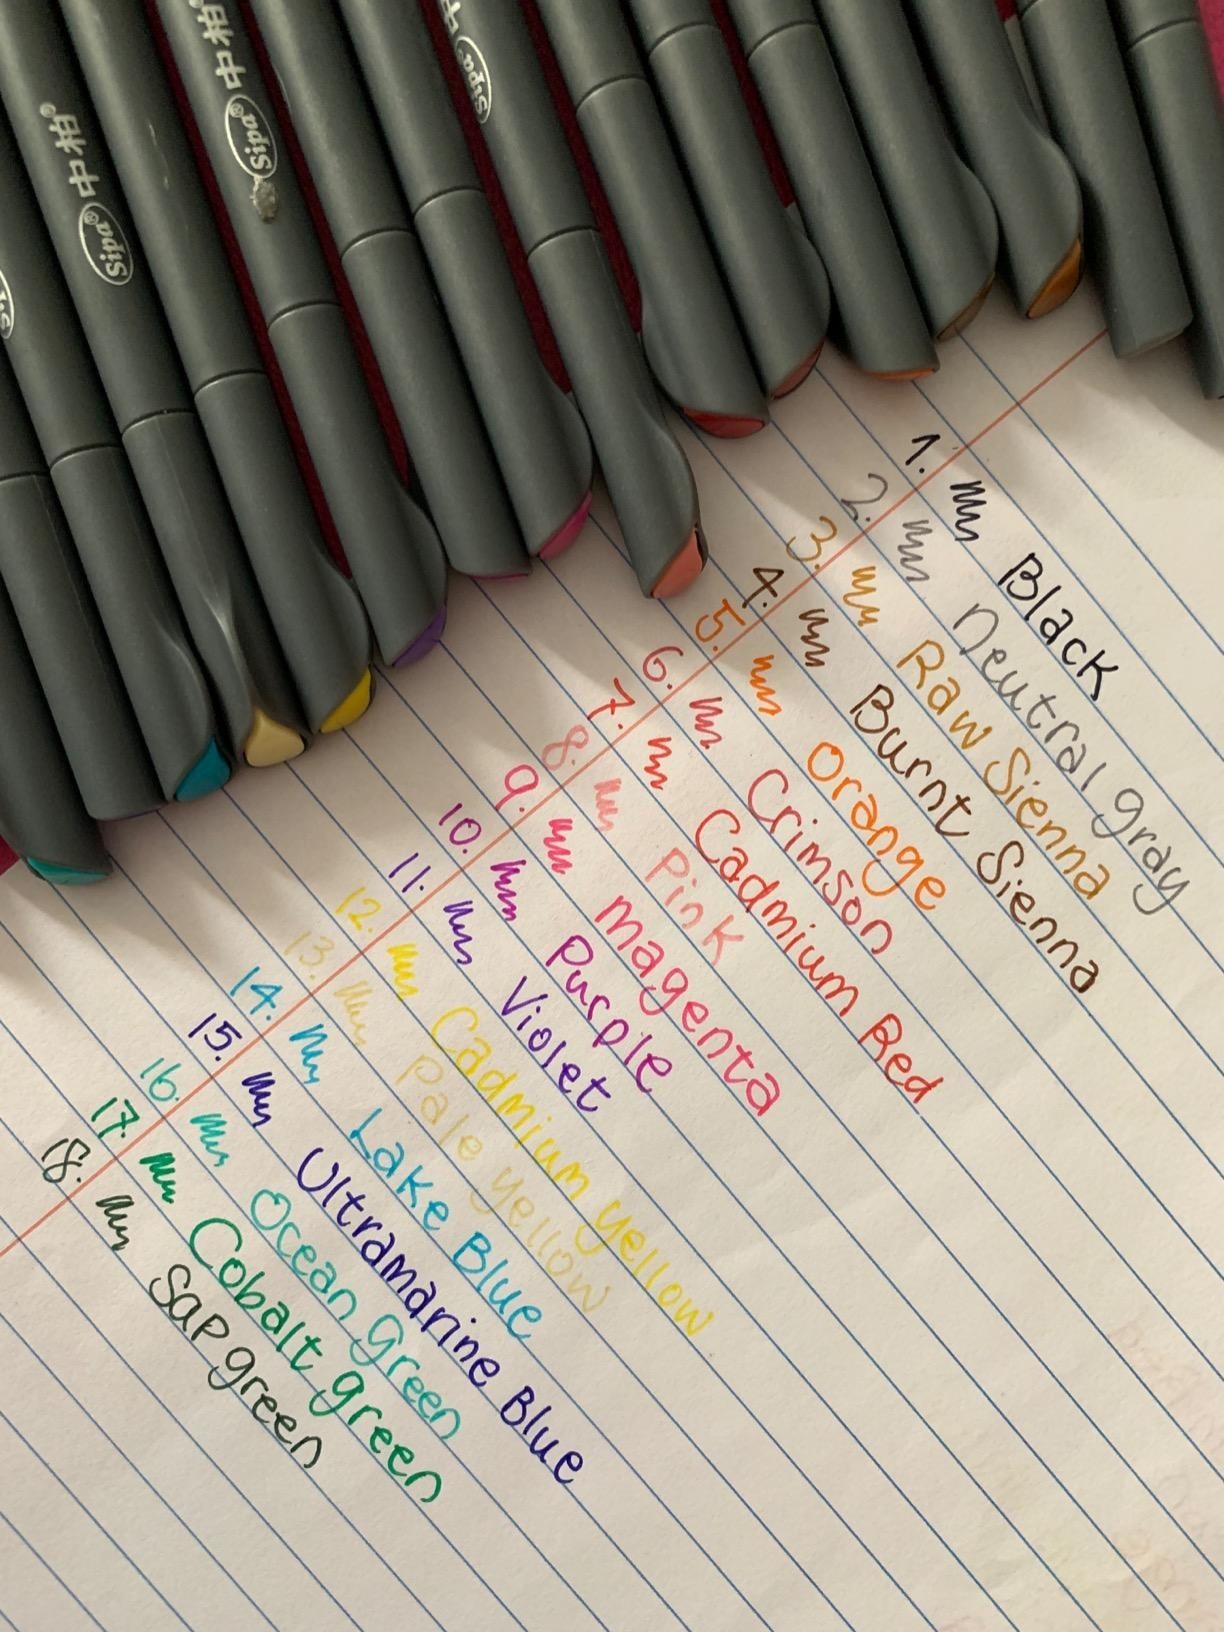 18笔写作在不同的颜色显示颜色和thin-ness好点”class=